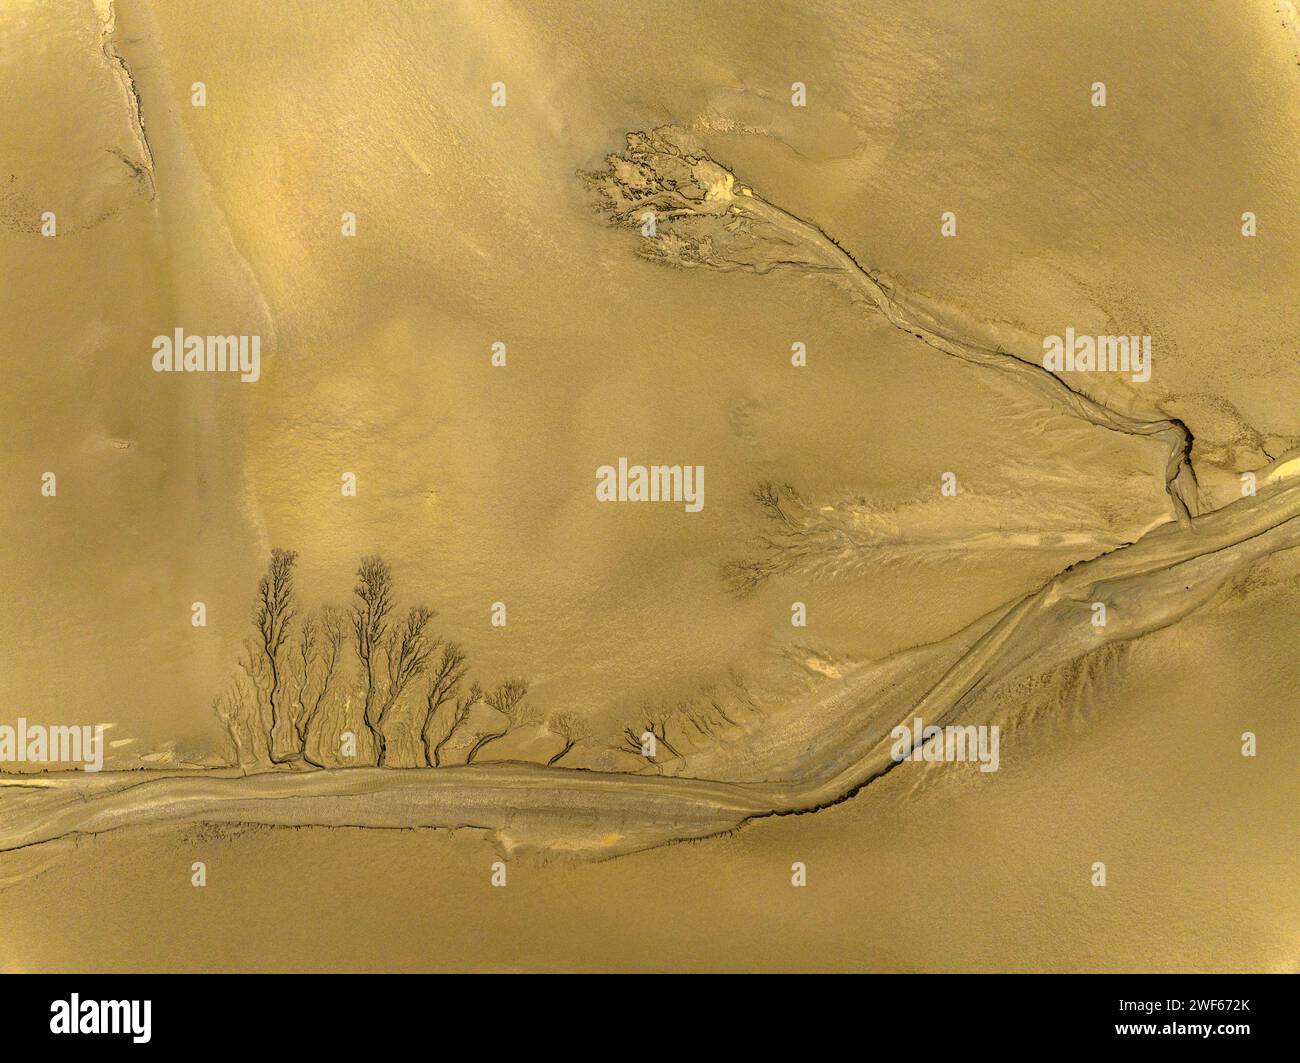 Ecological Scenery of Dongtai Tiaozini Wetland in Yancheng, Jiangsu Province Stock Photo